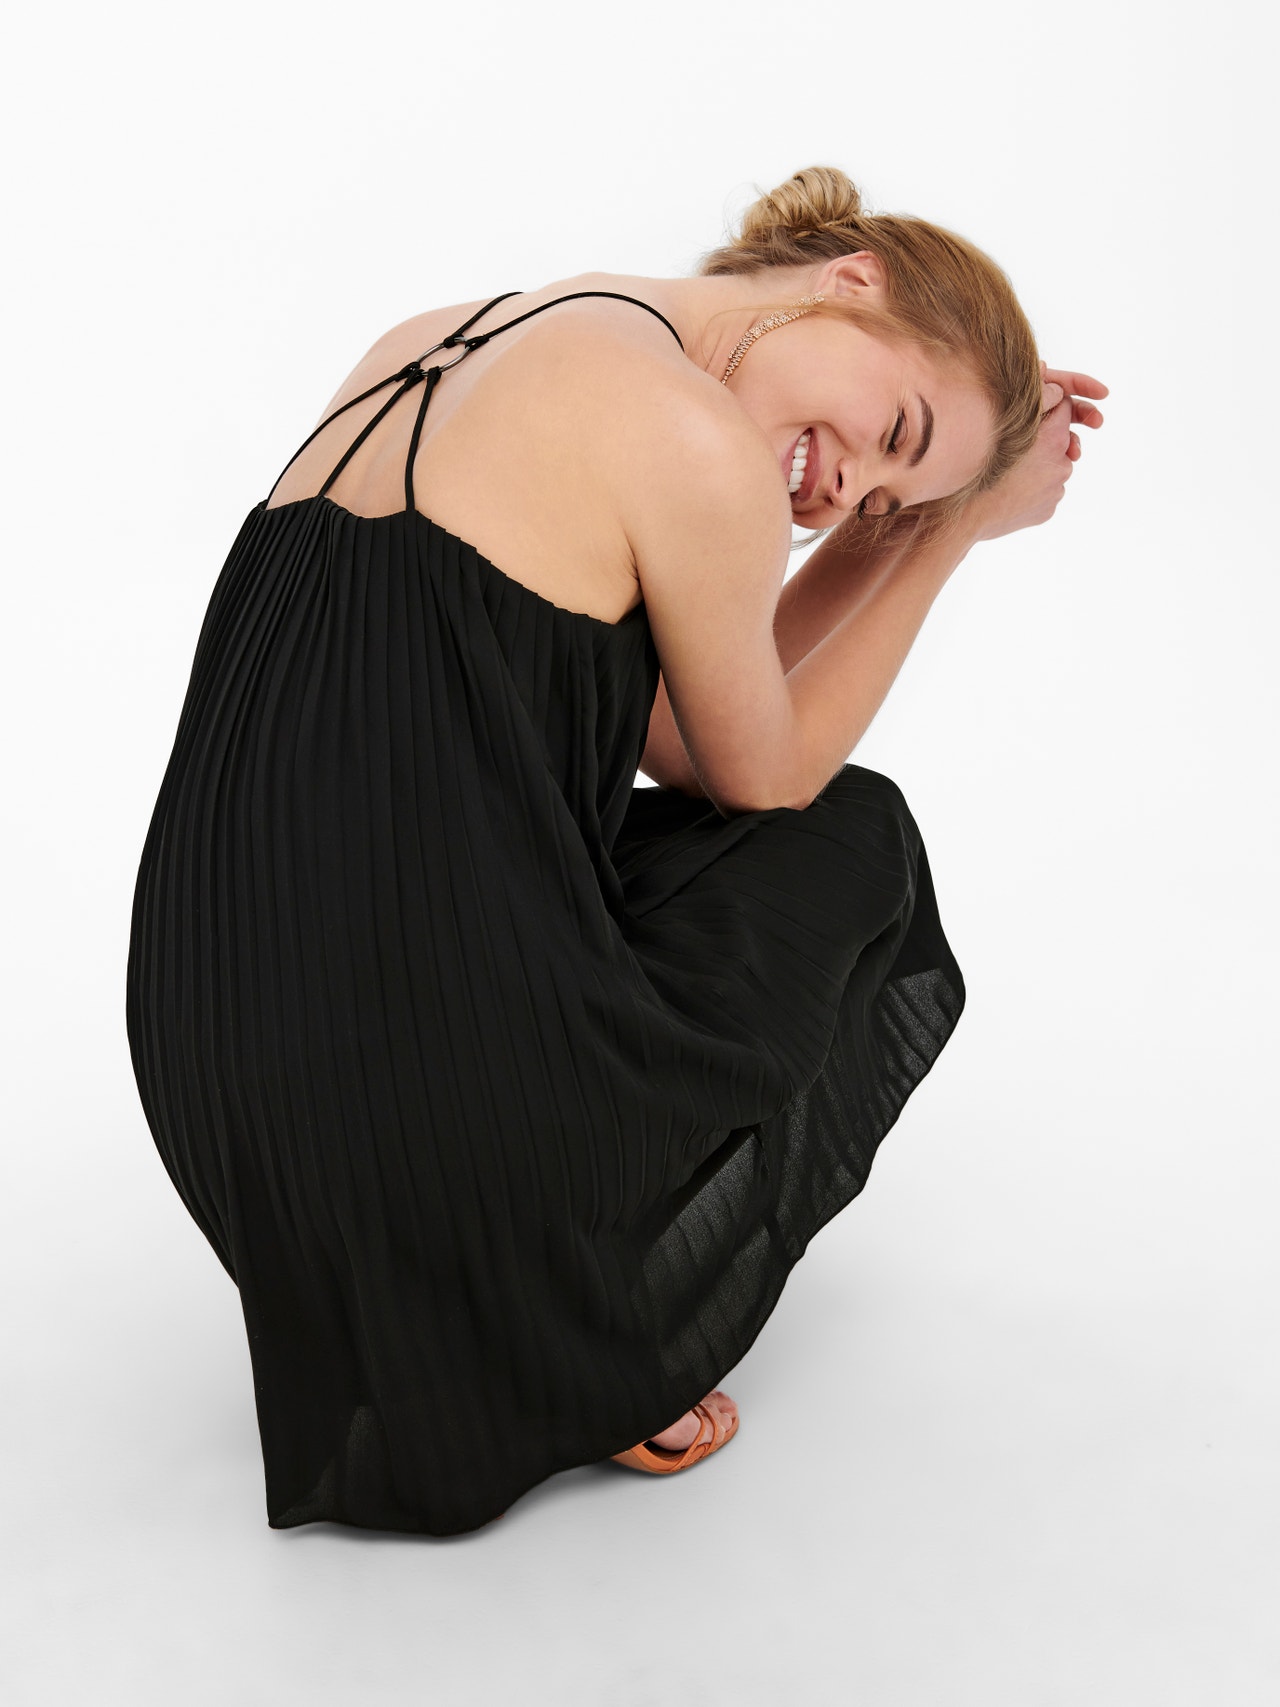 ONLY Mini Plisse strap Dress -Black - 15255215